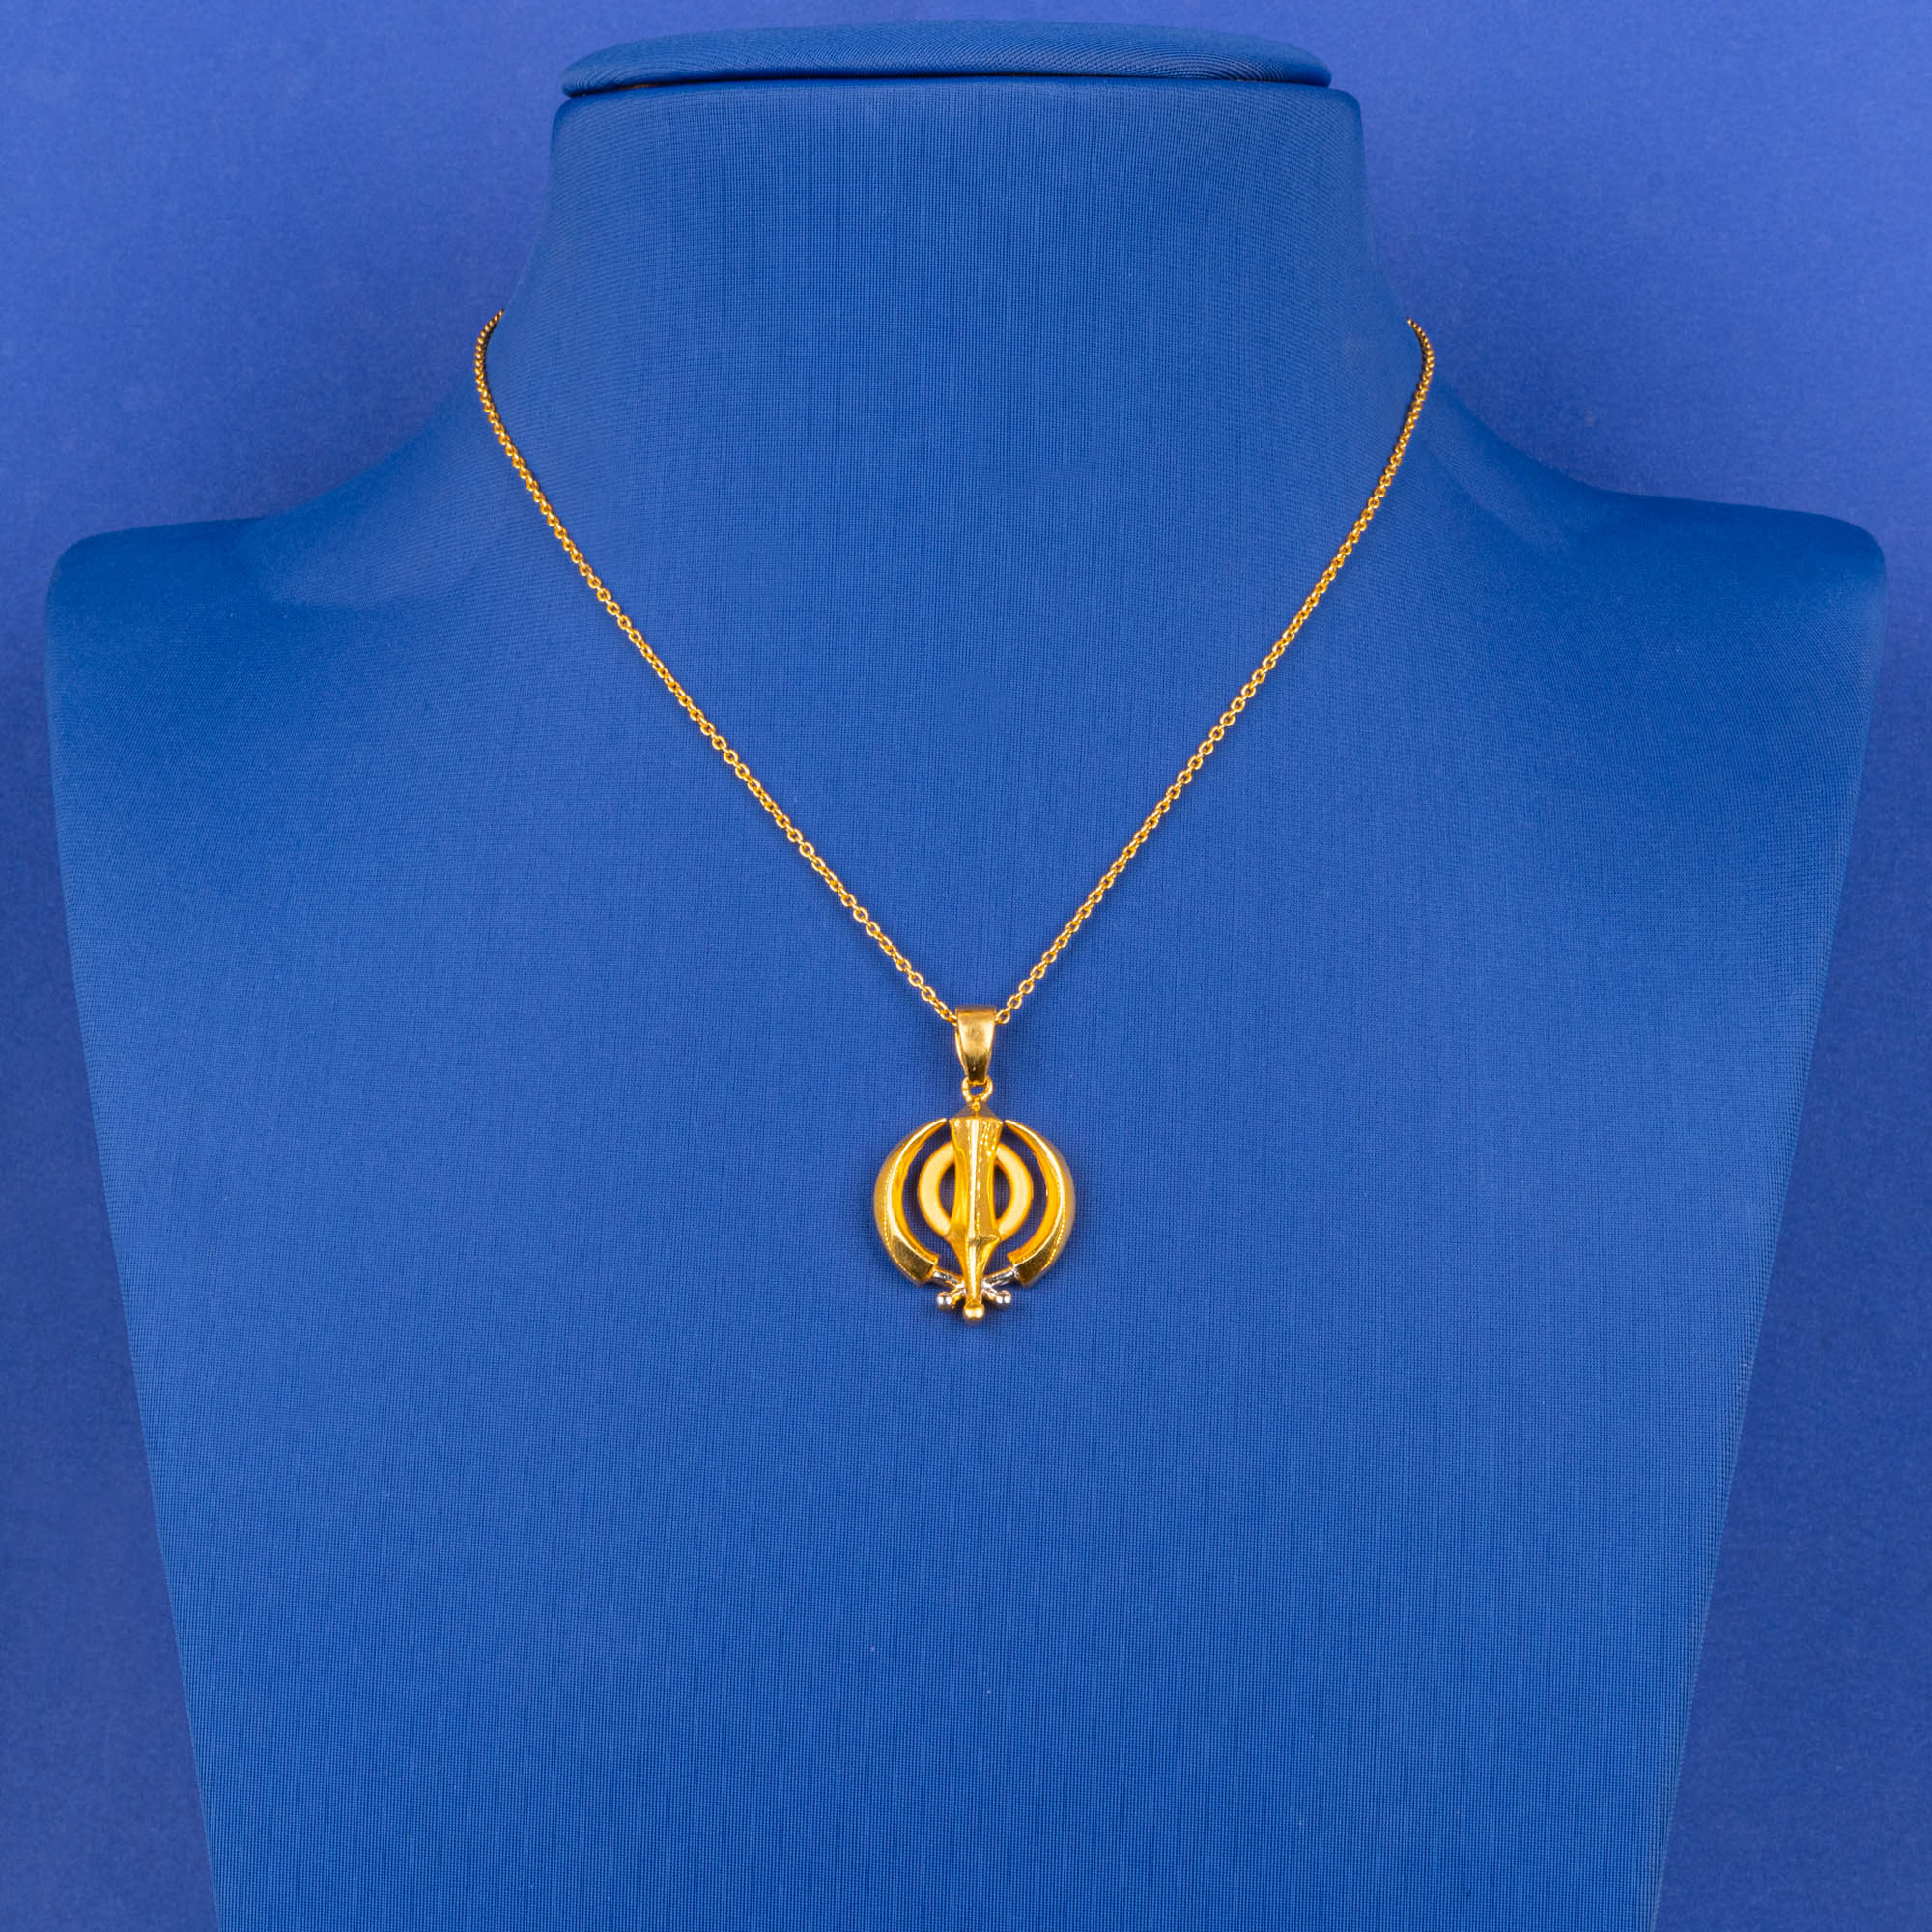 Handmade 22K Yellow Gold Sikh Khanda Pendant (chain not included)